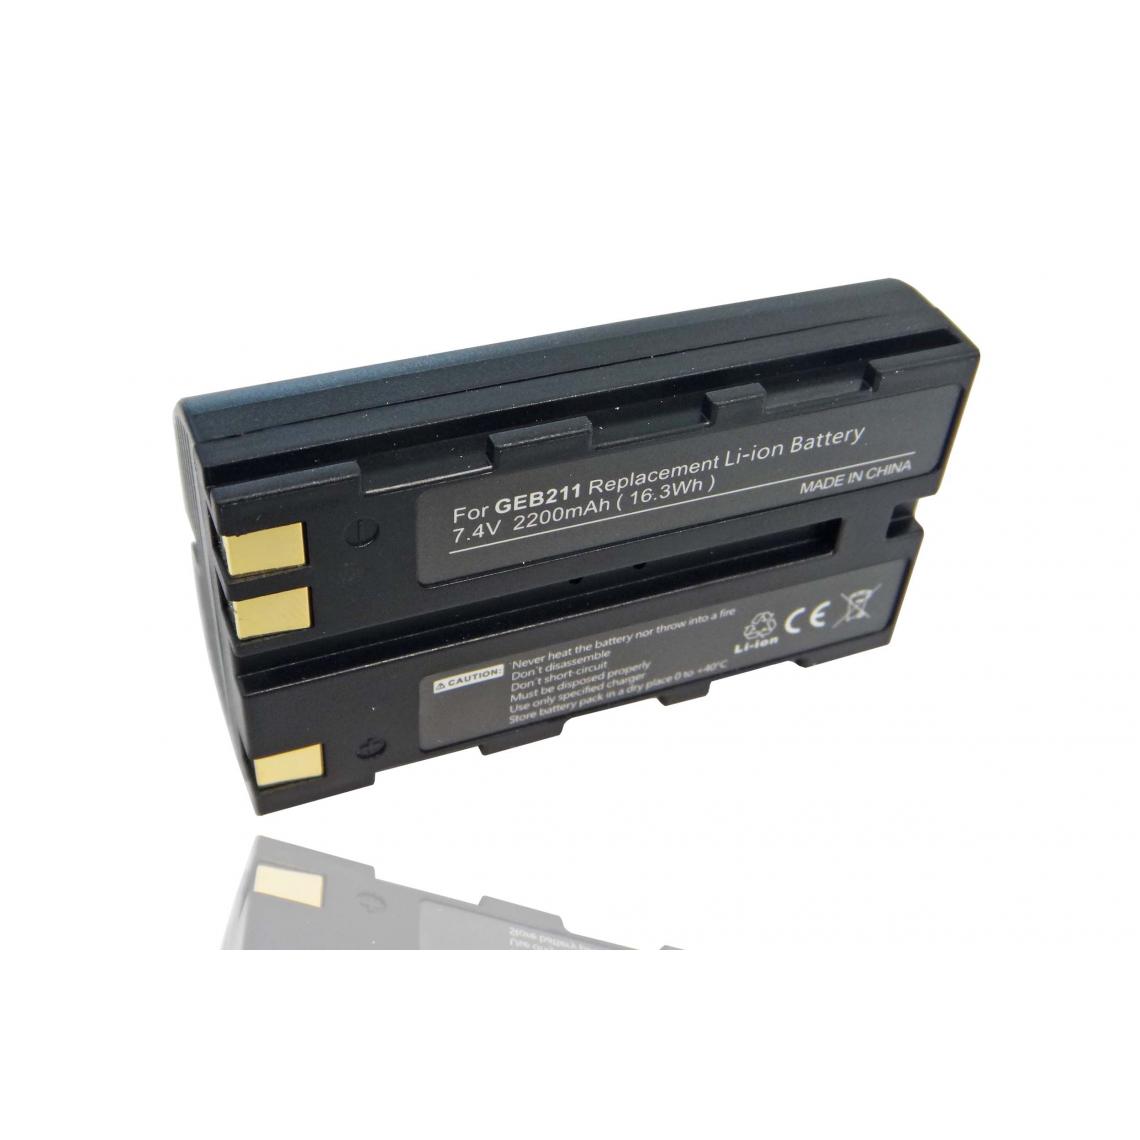 Vhbw - vhbw Batterie remplacement pour Geomax ZBA200, ZBA400 pour dispositif de mesure laser, outil de mesure (2200mAh, 7,4V, Li-ion) - Piles rechargeables